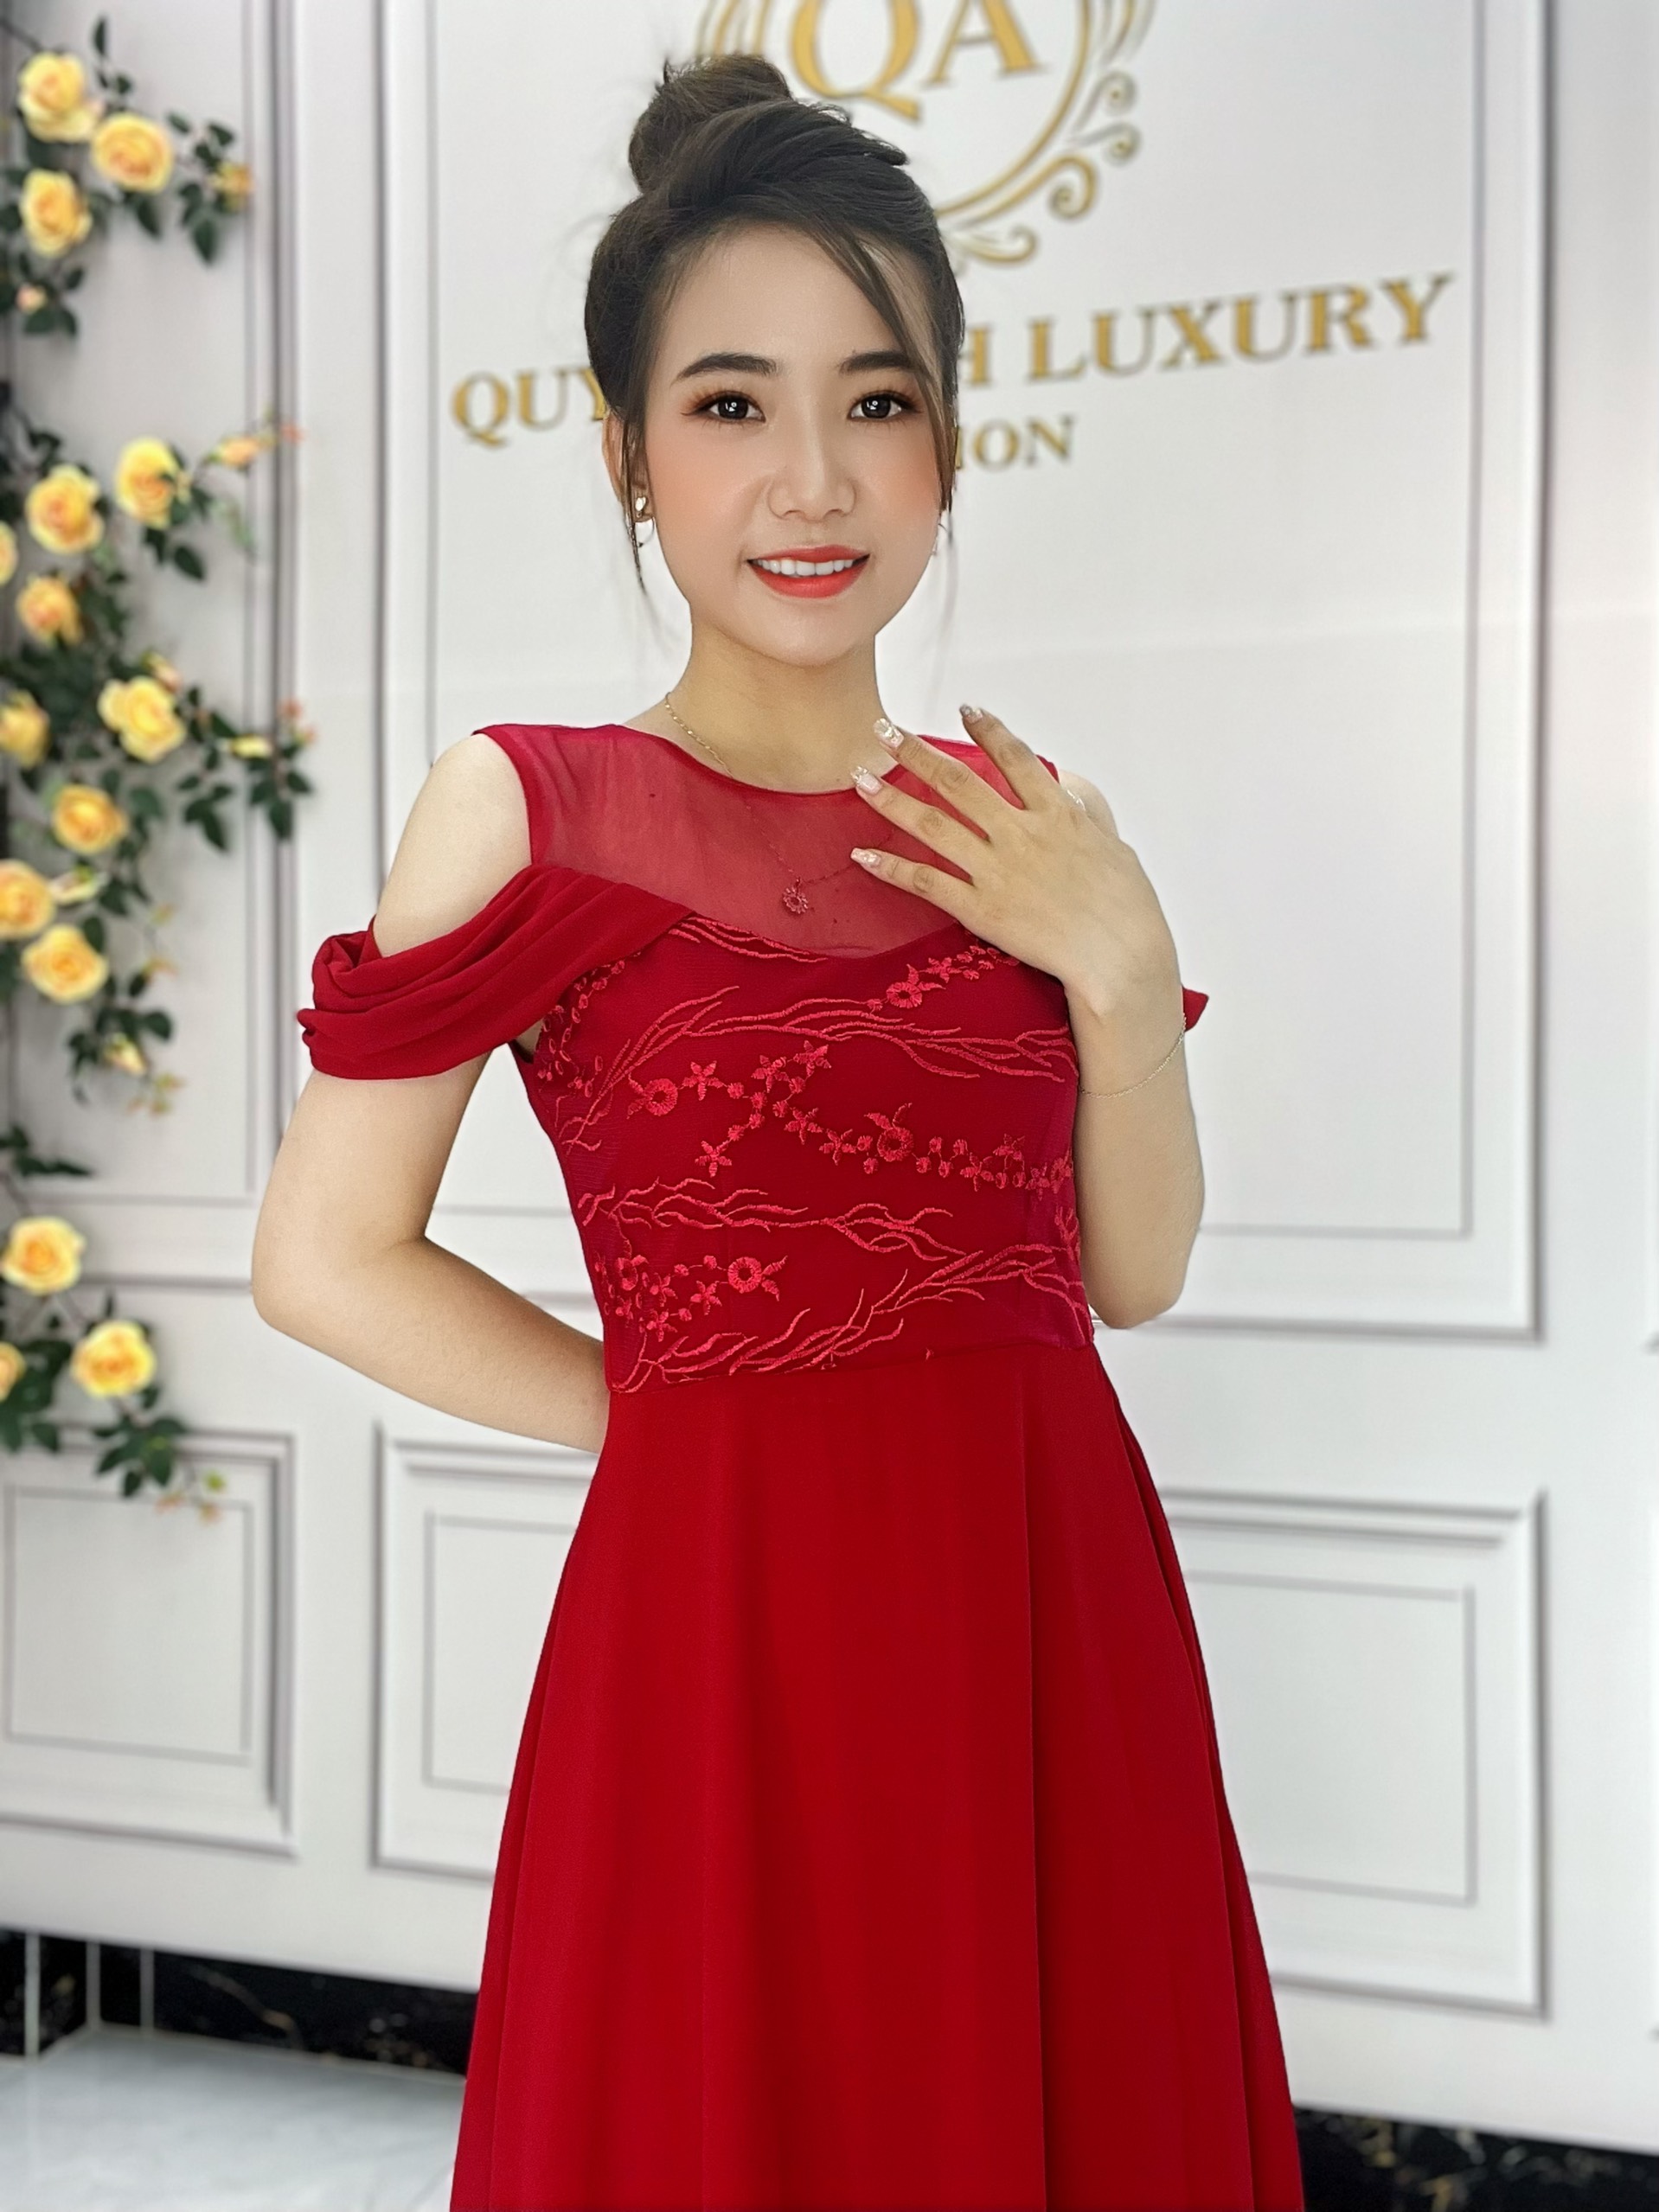 Đầm Quỳnh Anh Luxury Fashion